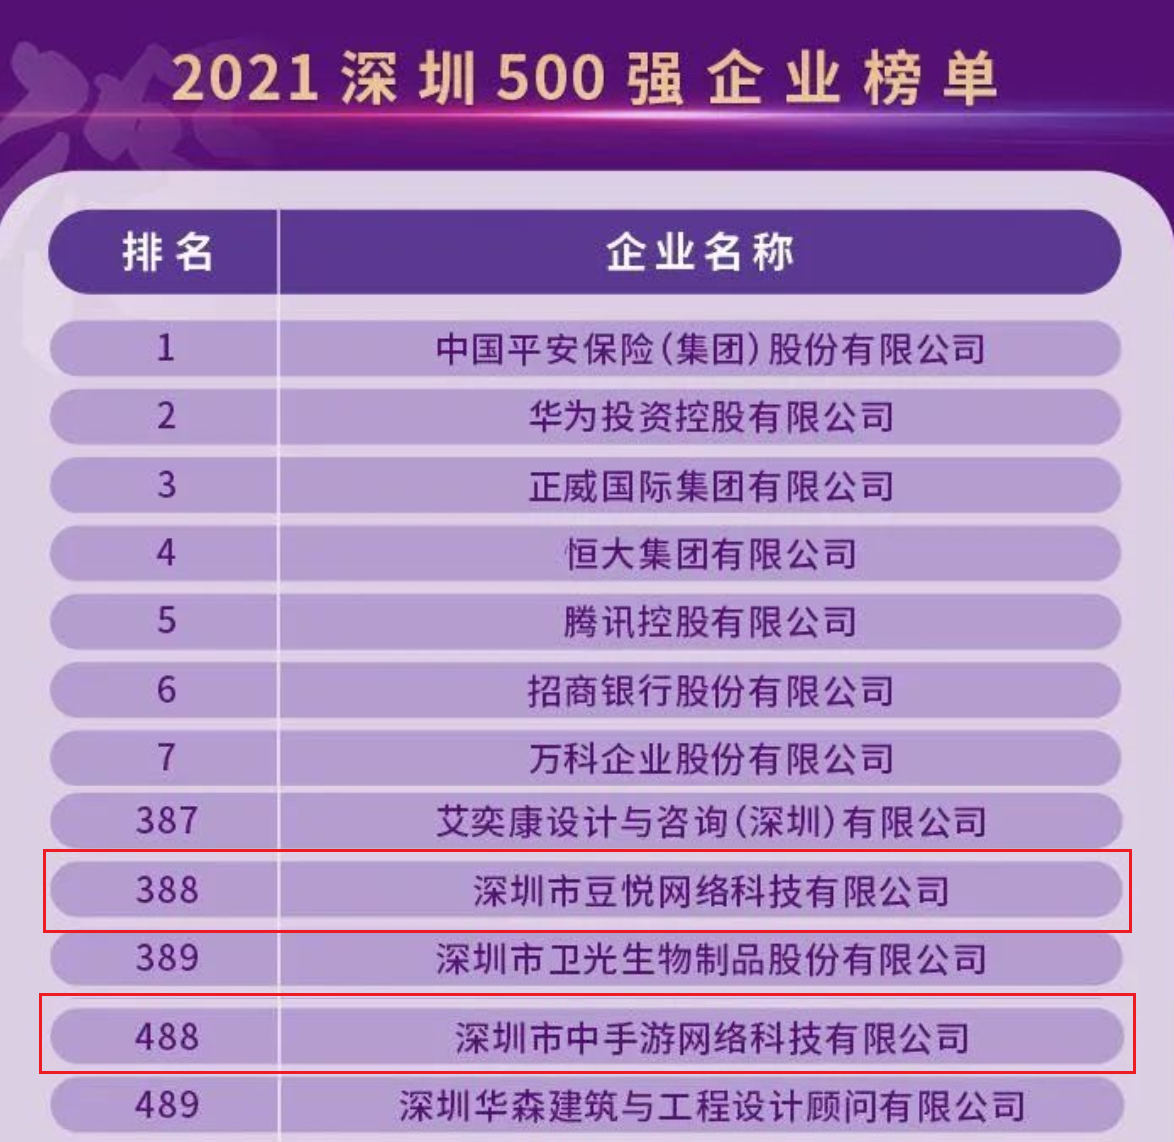 中手游及子公司豆悦双双入选“2021深圳500强企业”